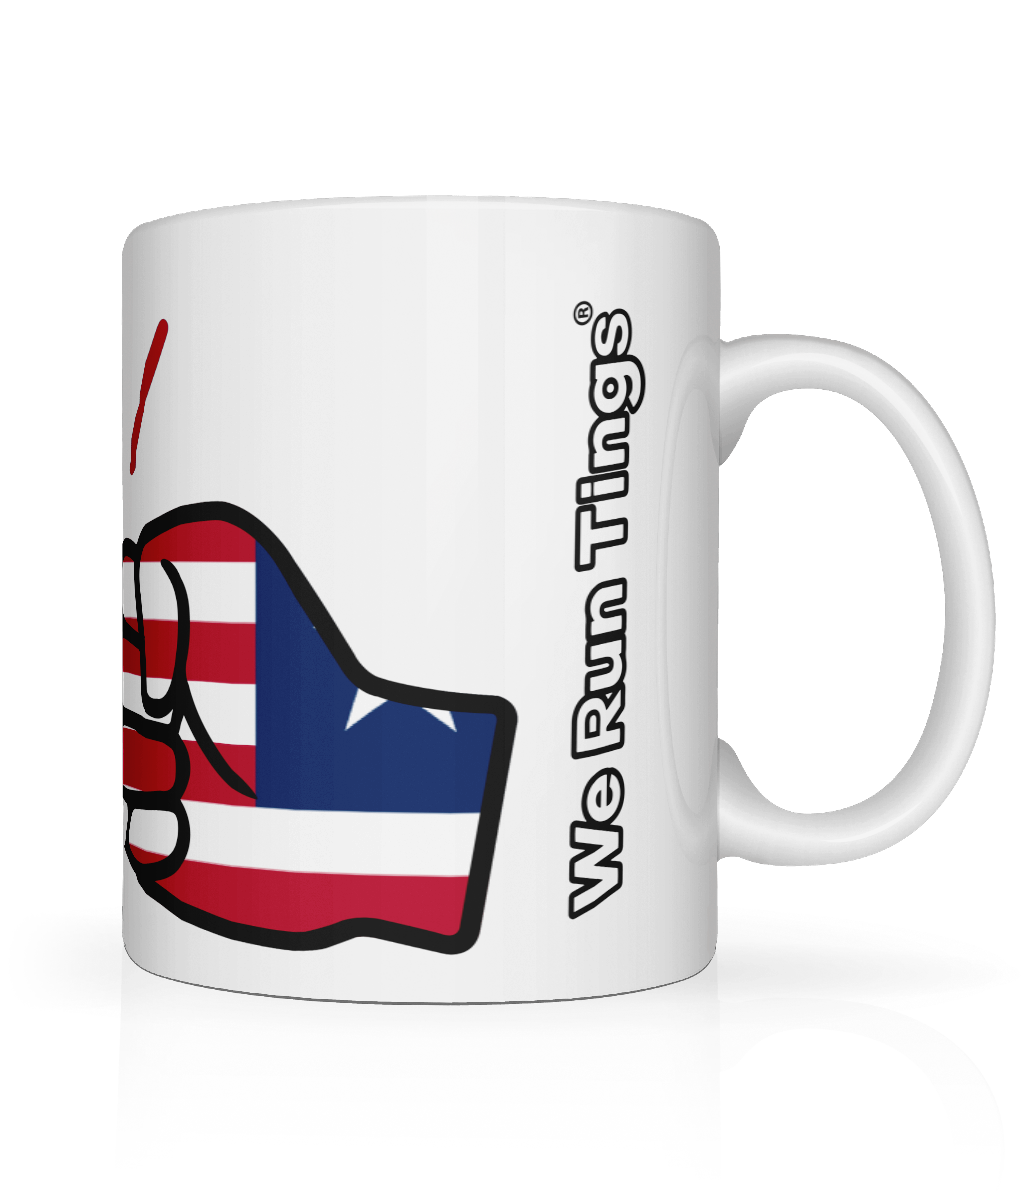 We Run Tings, Liberia, Tea, Coffee Ceramic Mug, Cup, White, 11oz